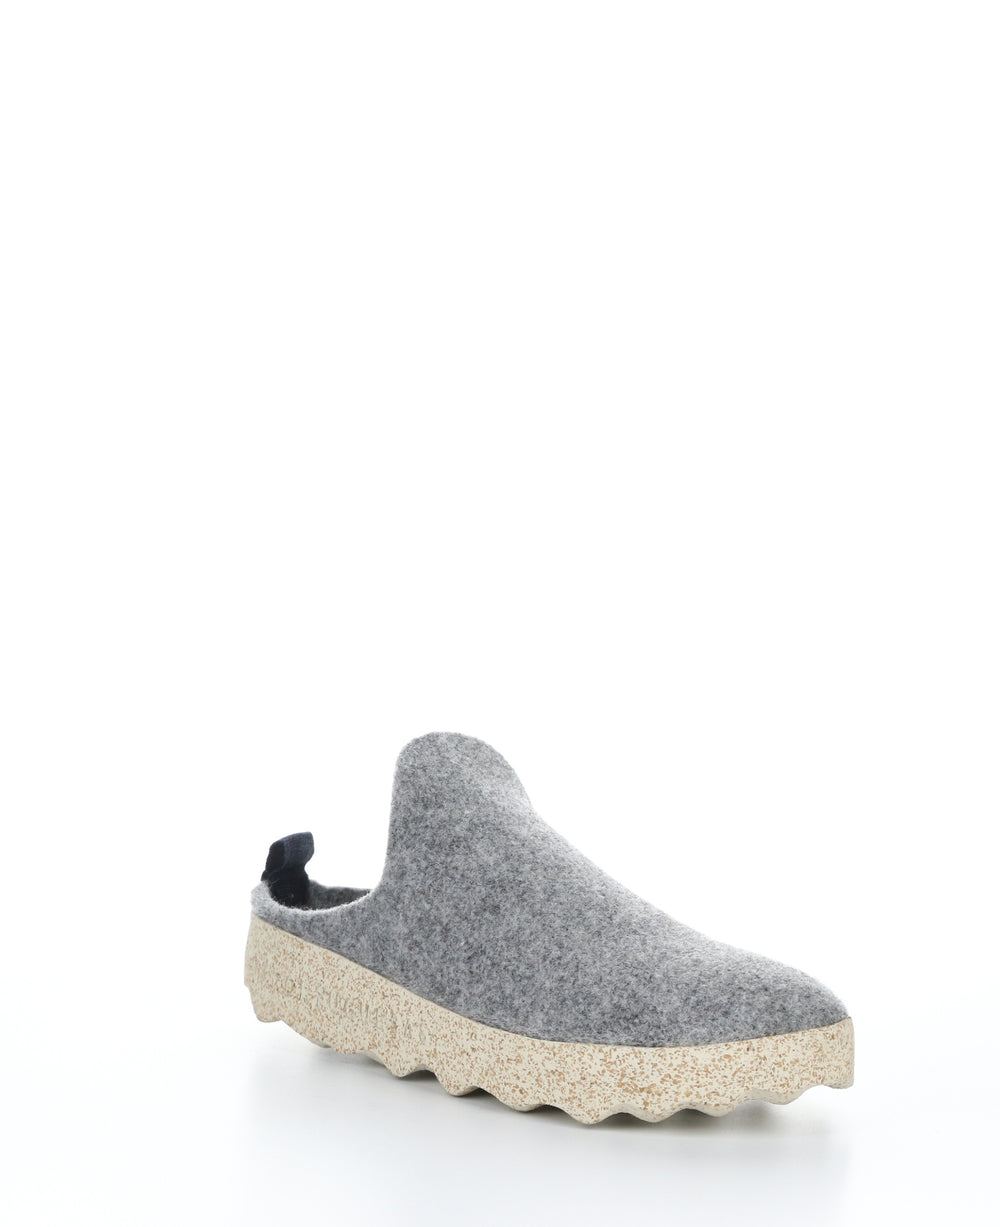 COME023ASP Concrete Round Toe Shoes|COME023ASP Chaussures à Bout Rond in Gris